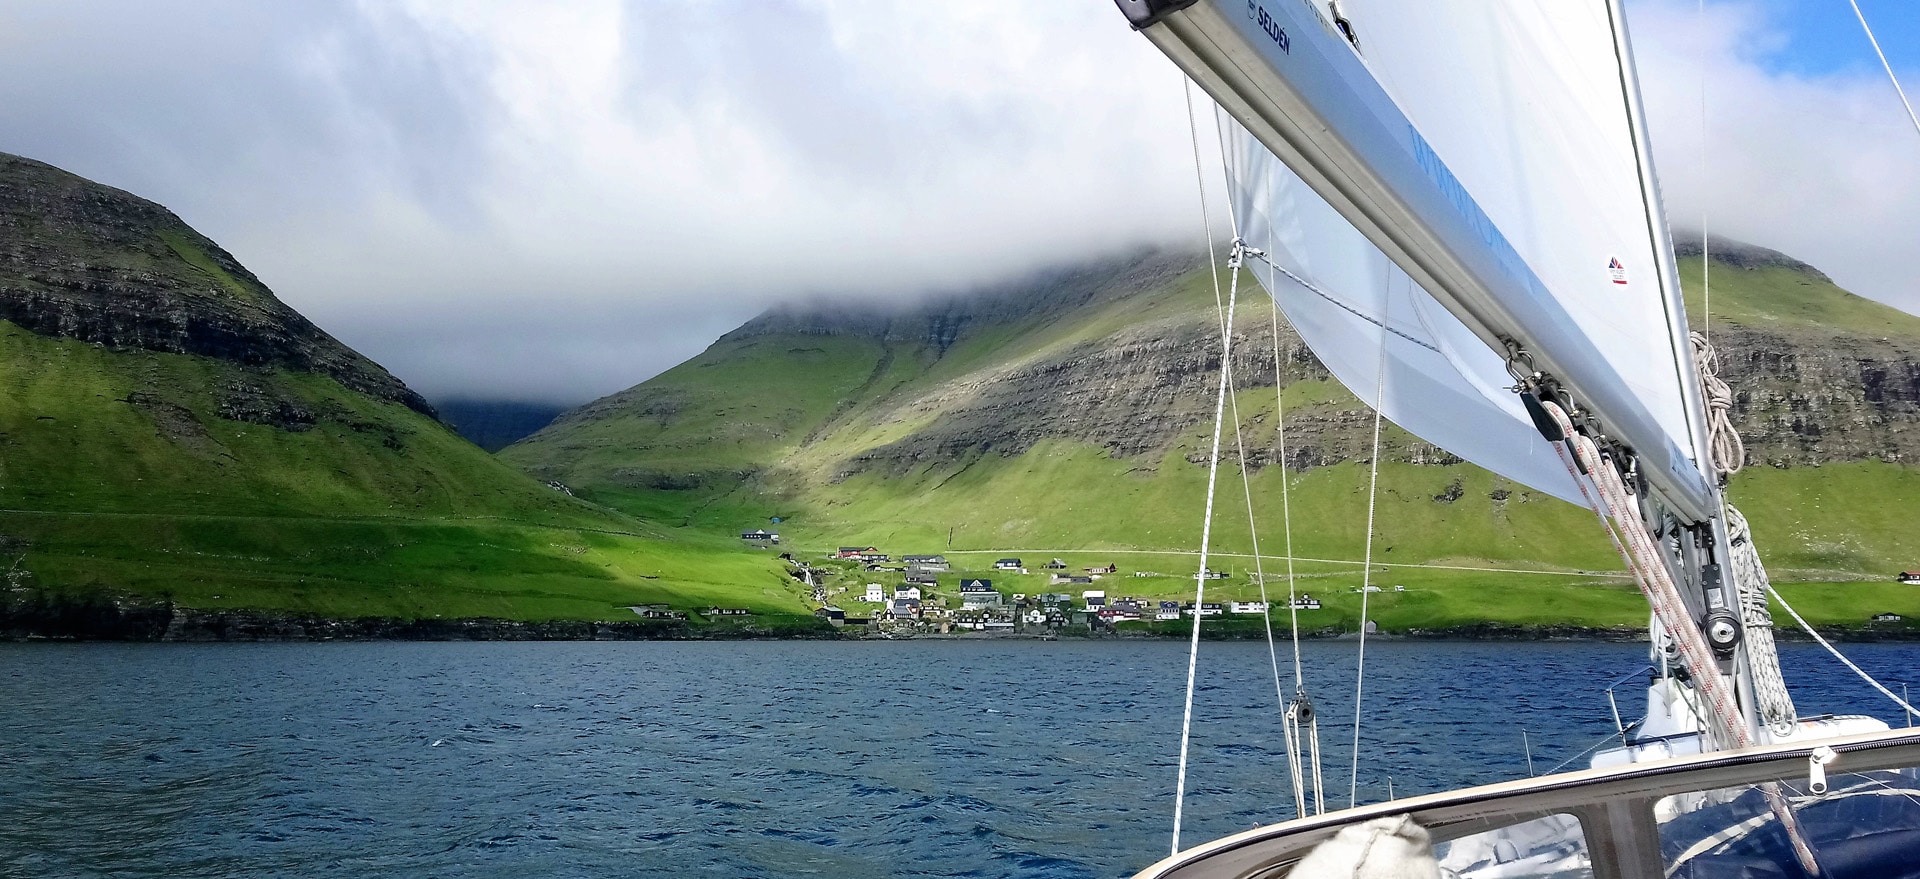 Faroe islands sailing holiday on Cherokee